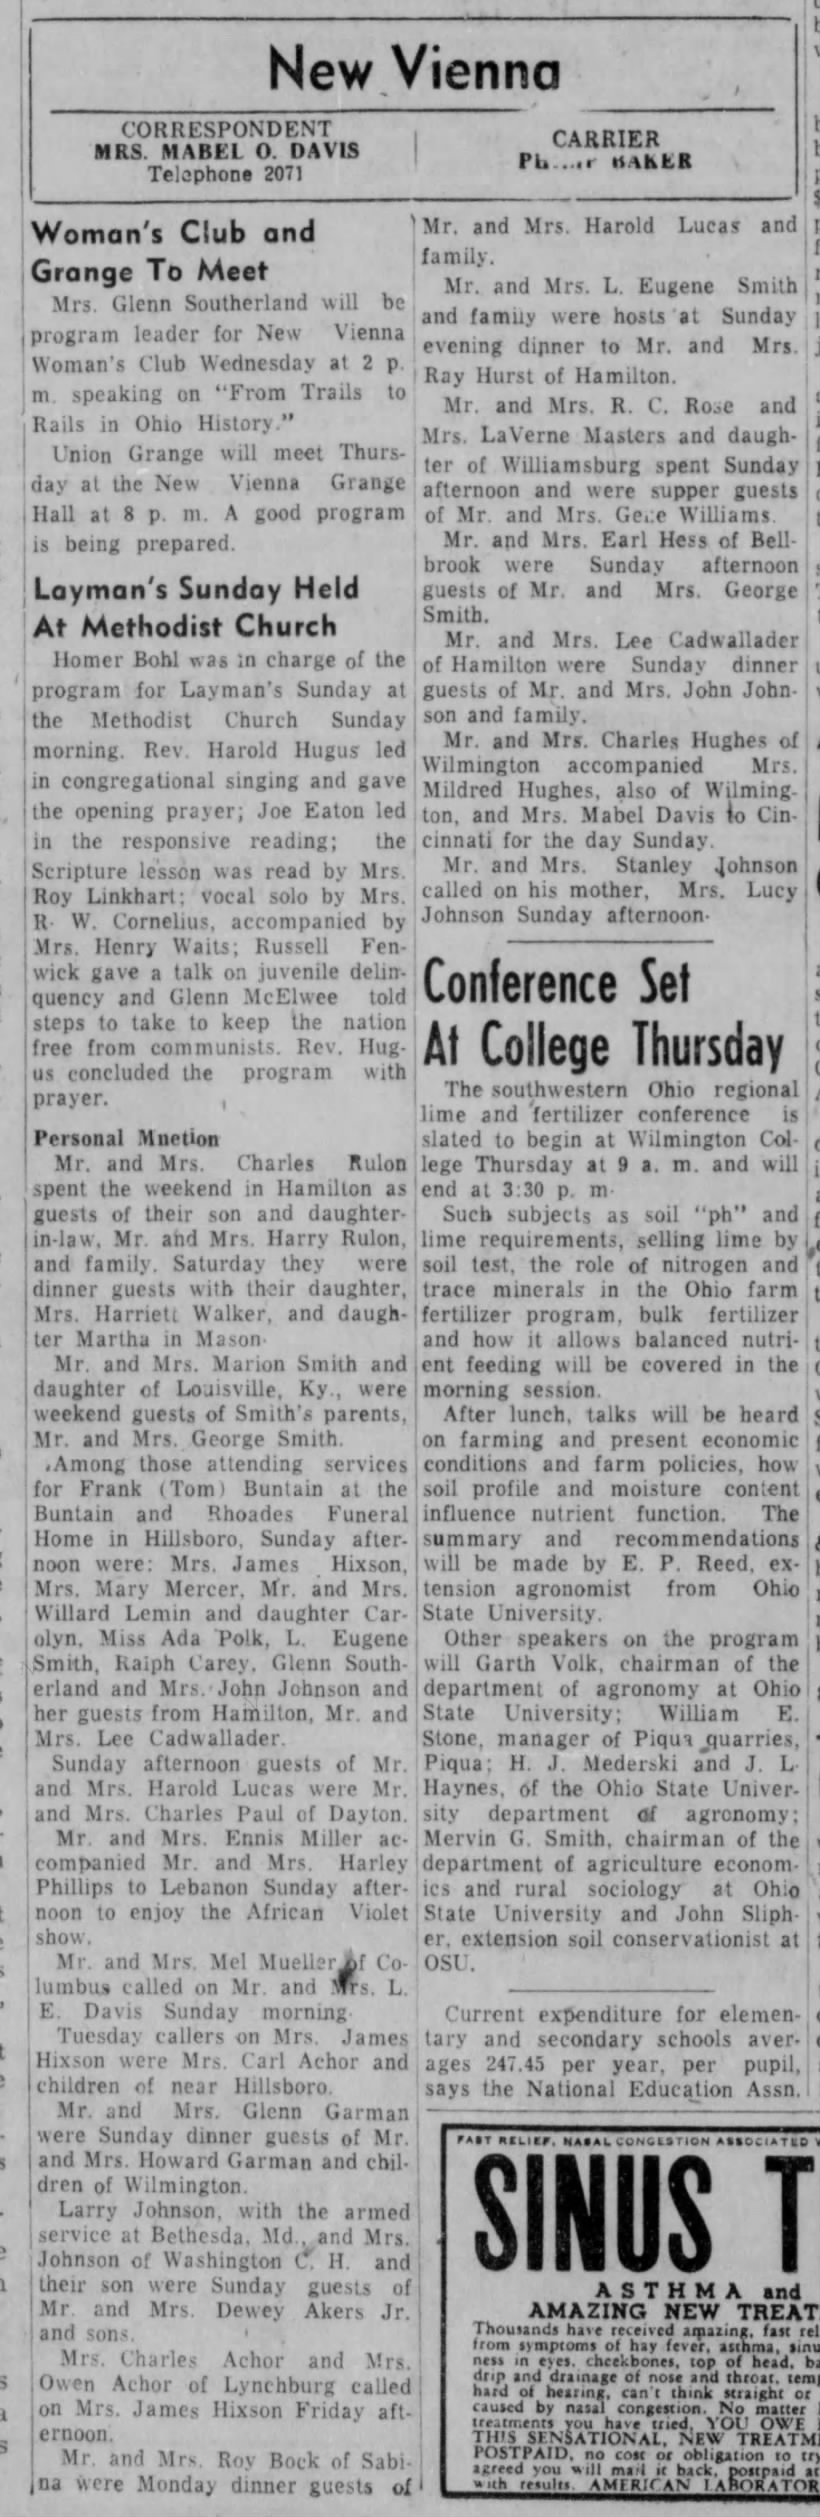 1954 New Vienna (Ohio) News -Oct. 26